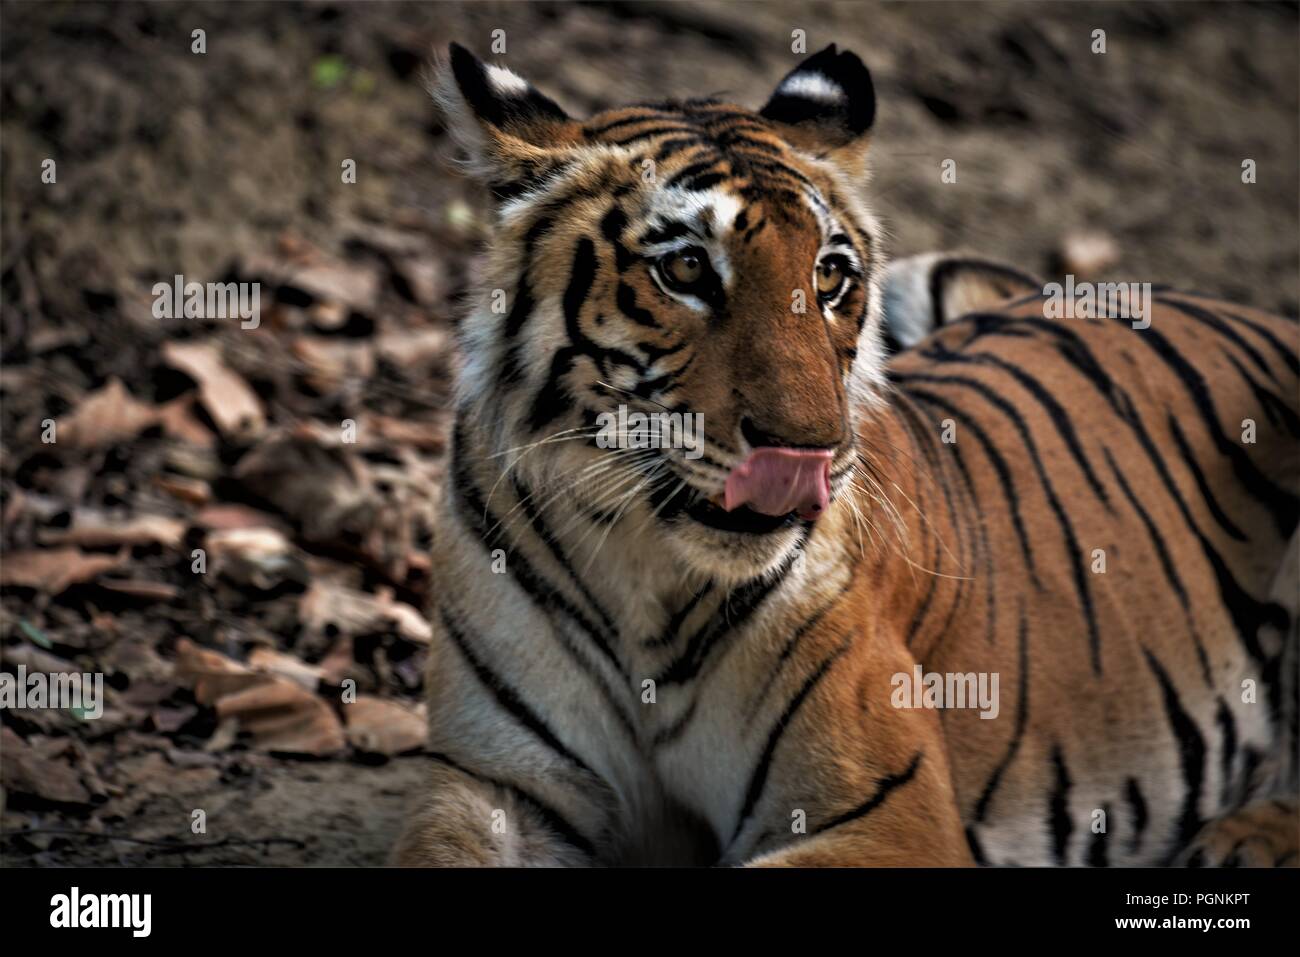 Royal Indian Bengal Tiger / Indian tiger Stock Photo